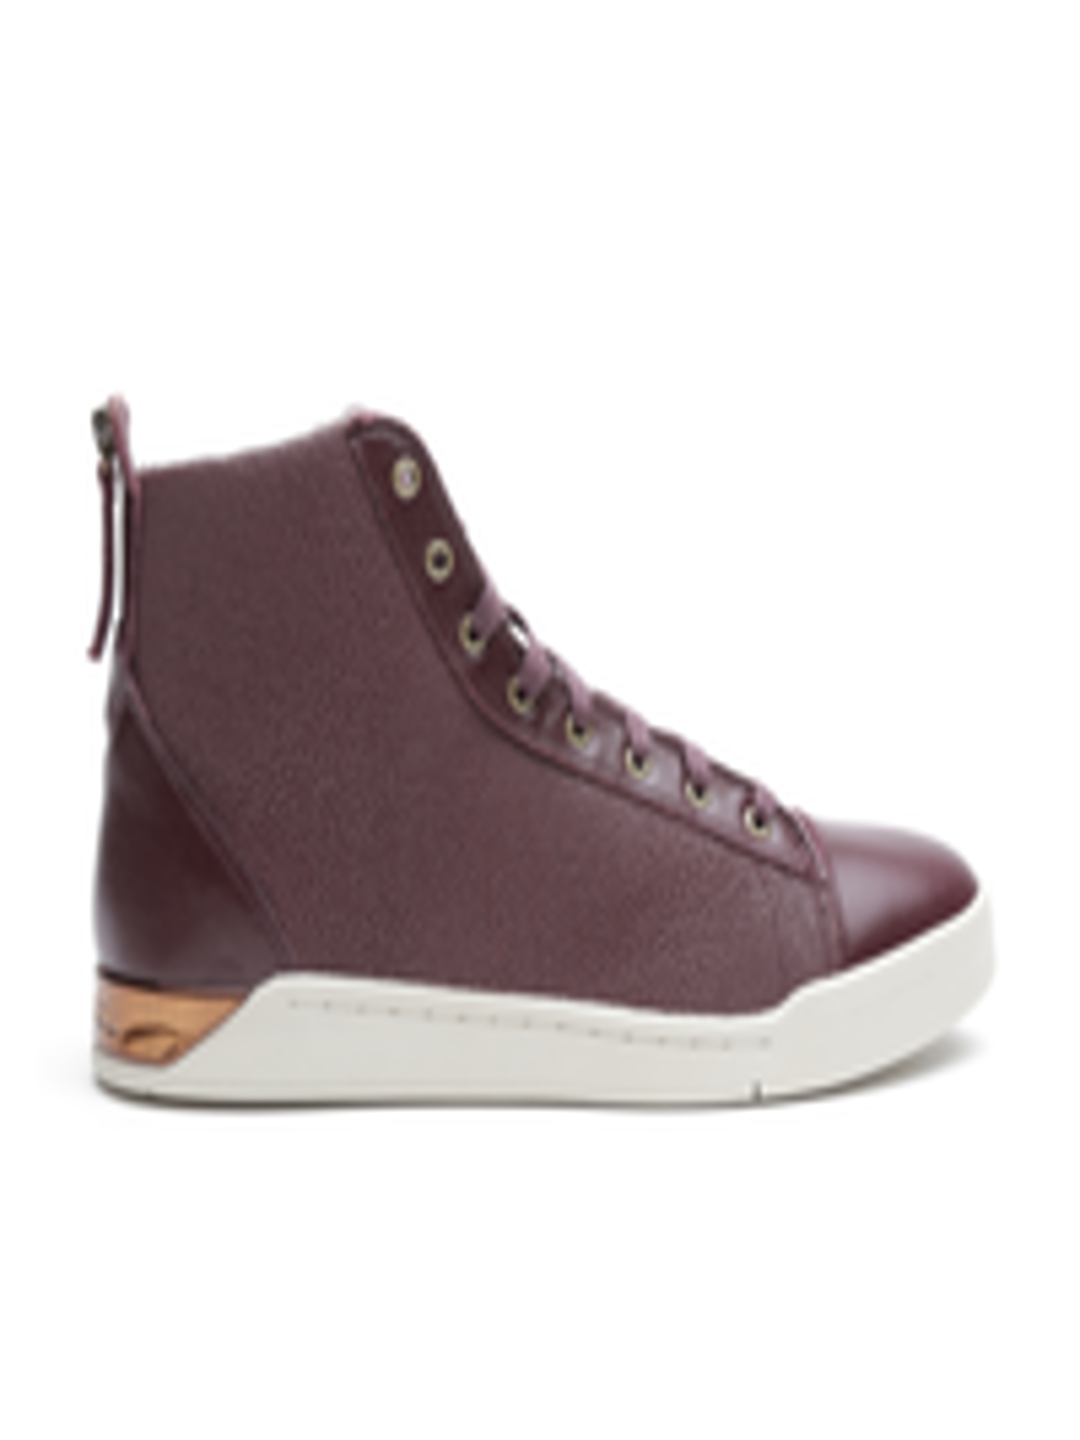 Buy DIESEL Men Burgundy Textured Leather Mid Top Sneakers - Casual ...